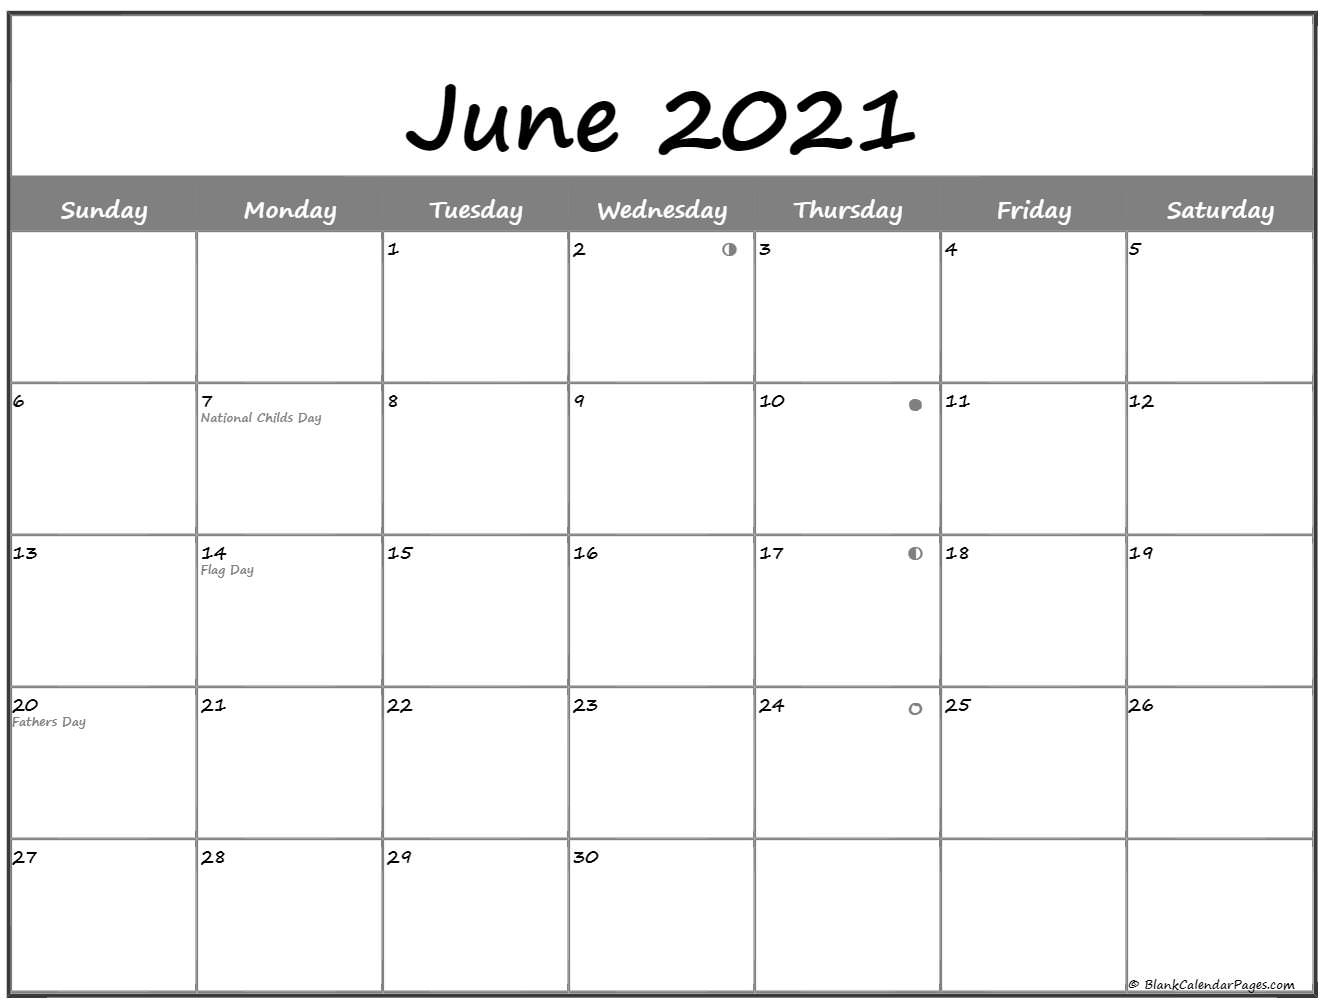 June 2021 Lunar Calendar | Moon Phase Calendar Lunar Calendar August 2021